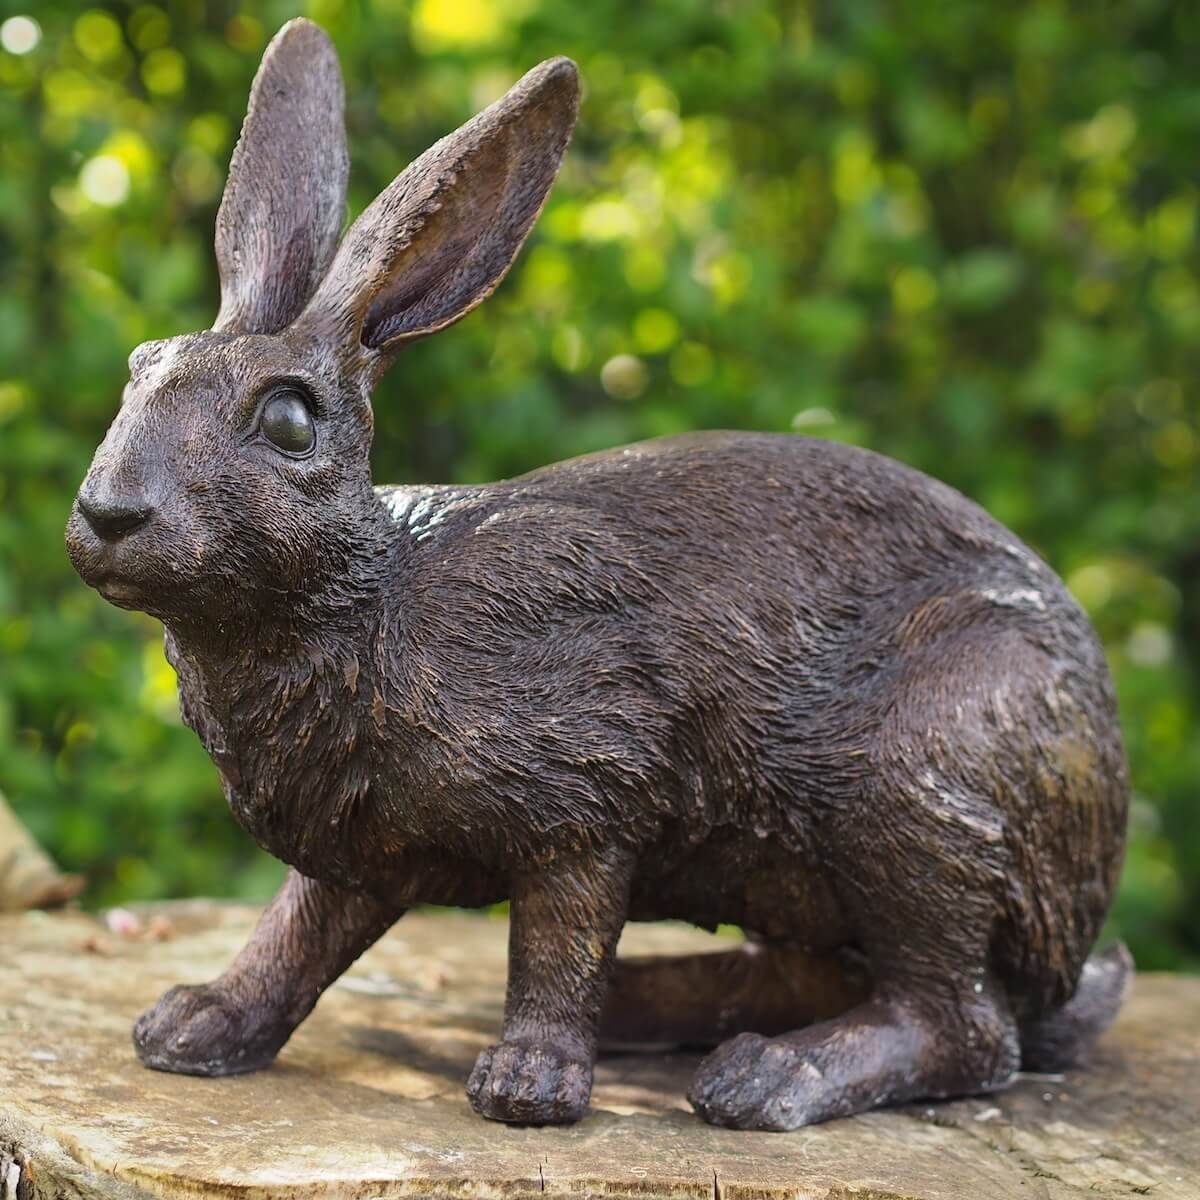 bronZartes Gartenfigur Bronzeskulptur "Sitzender Hase"